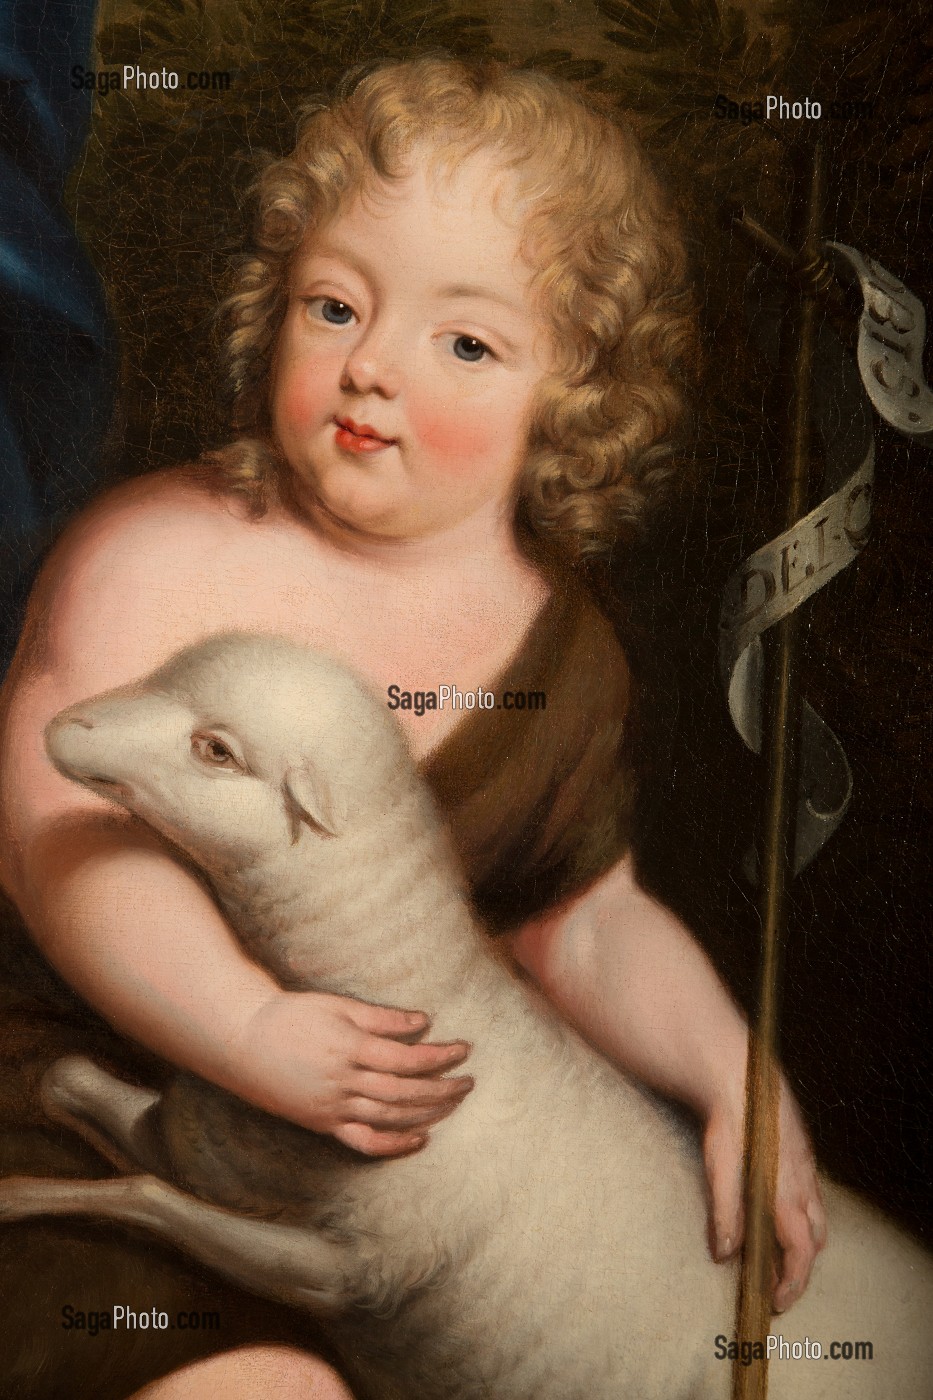 COMTE DE VEXIN (1672-1683), ENFANT ILLEGITIME DU ROI LOUIS XIV, PORTANT UN AGNEAU, DETAIL DU TABLEAU DE PIERRE MIGNARD (1612-1695), CHAMBRE DE MADAME DE MAINTENON, CHATEAU DE MAINTENON, EURE-ET-LOIR (28), FRANCE 